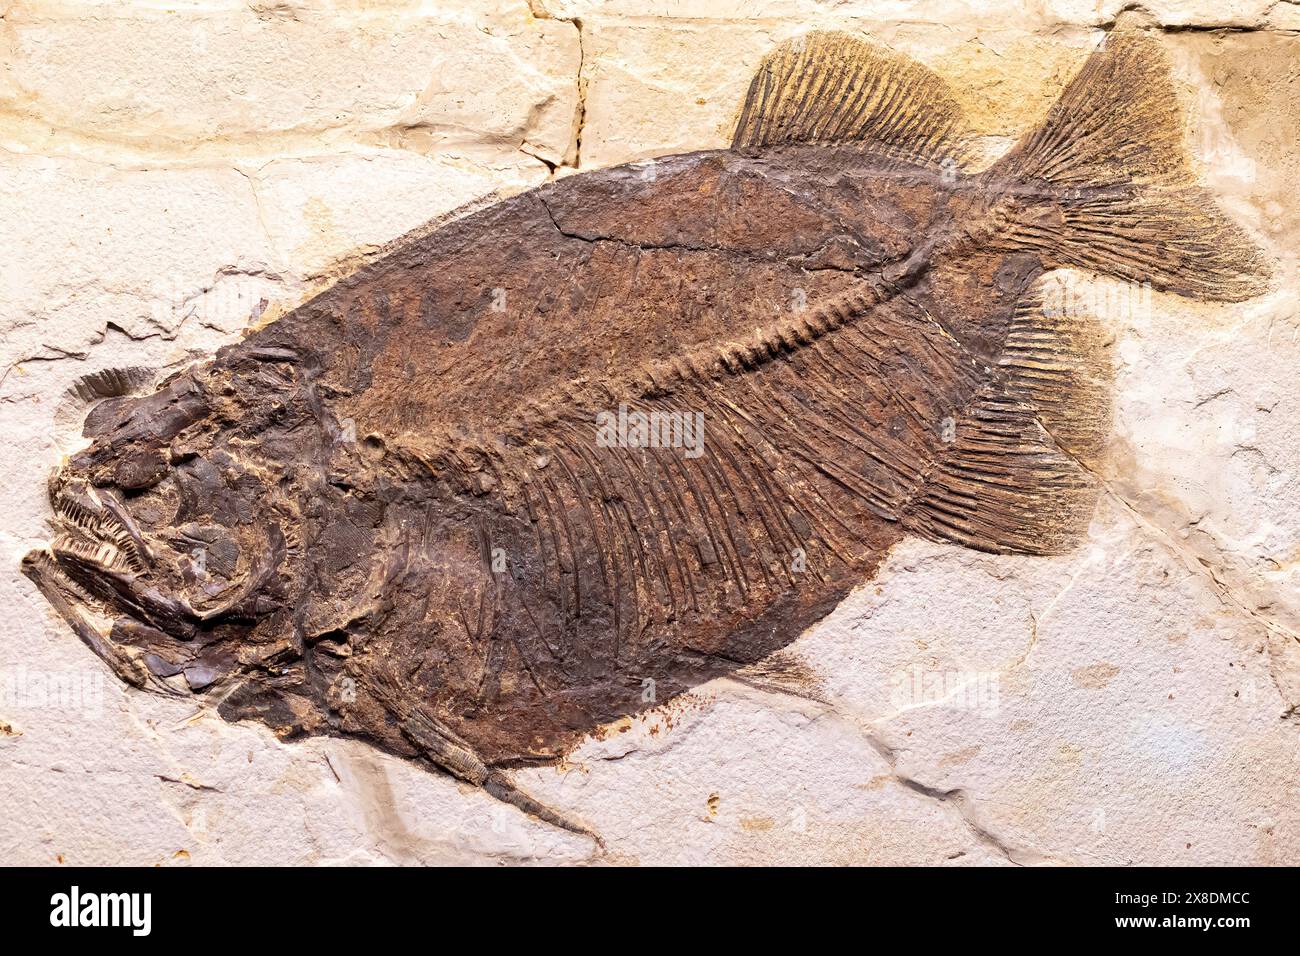 Fossile pétrifié bien conservé d'un poisson préhistorique présentant des détails complexes de la structure squelettique des poissons, des écailles et des nageoires. Banque D'Images